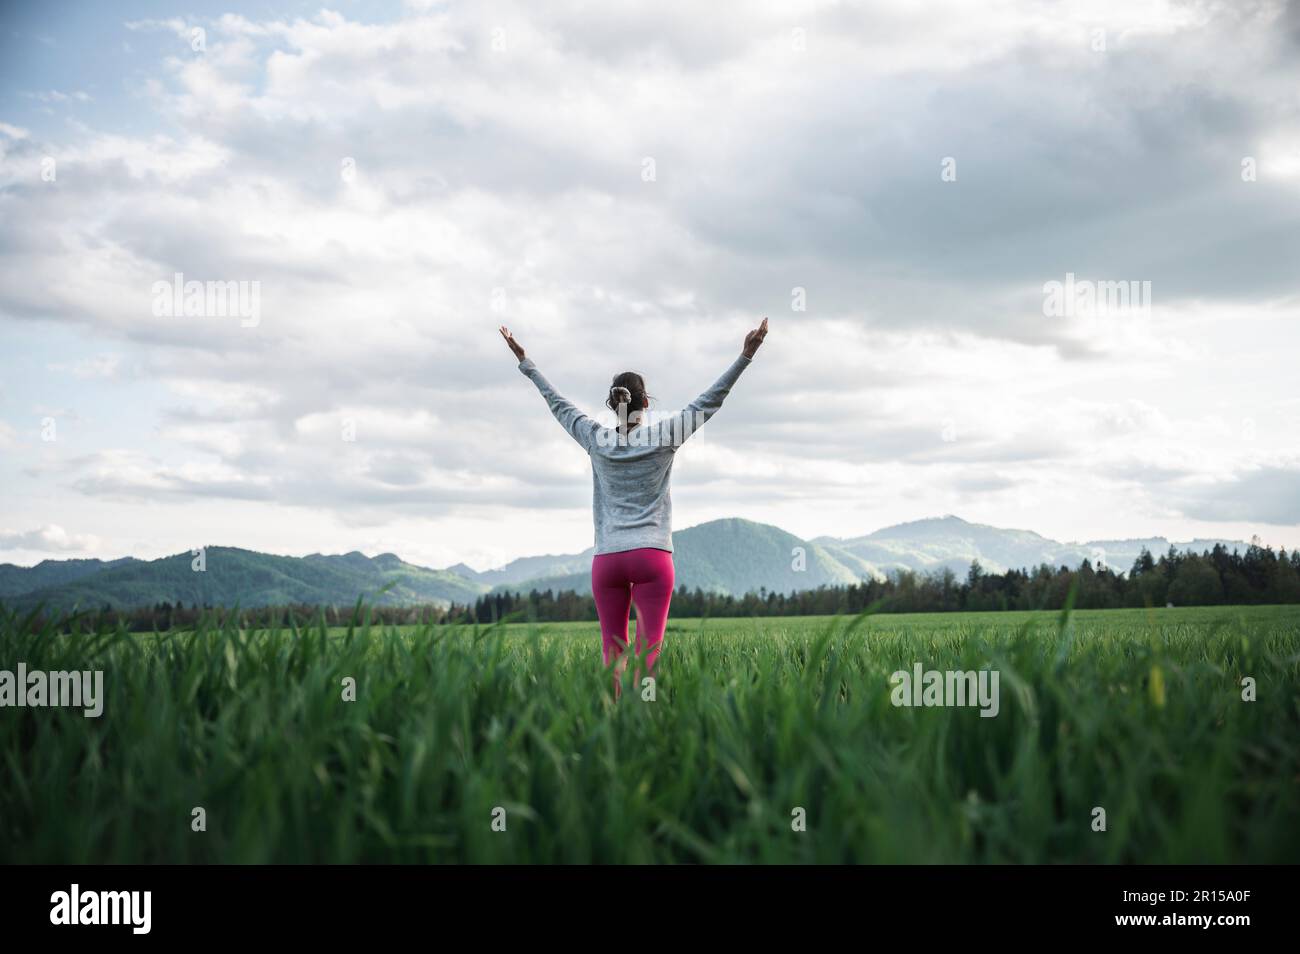 Vista posteriore ad angolo basso di una donna in piedi nel mezzo di un campo verde o prato godendo la vita e meditando con le braccia sollevate in alto. Sotto sp. Nuvoloso Foto Stock